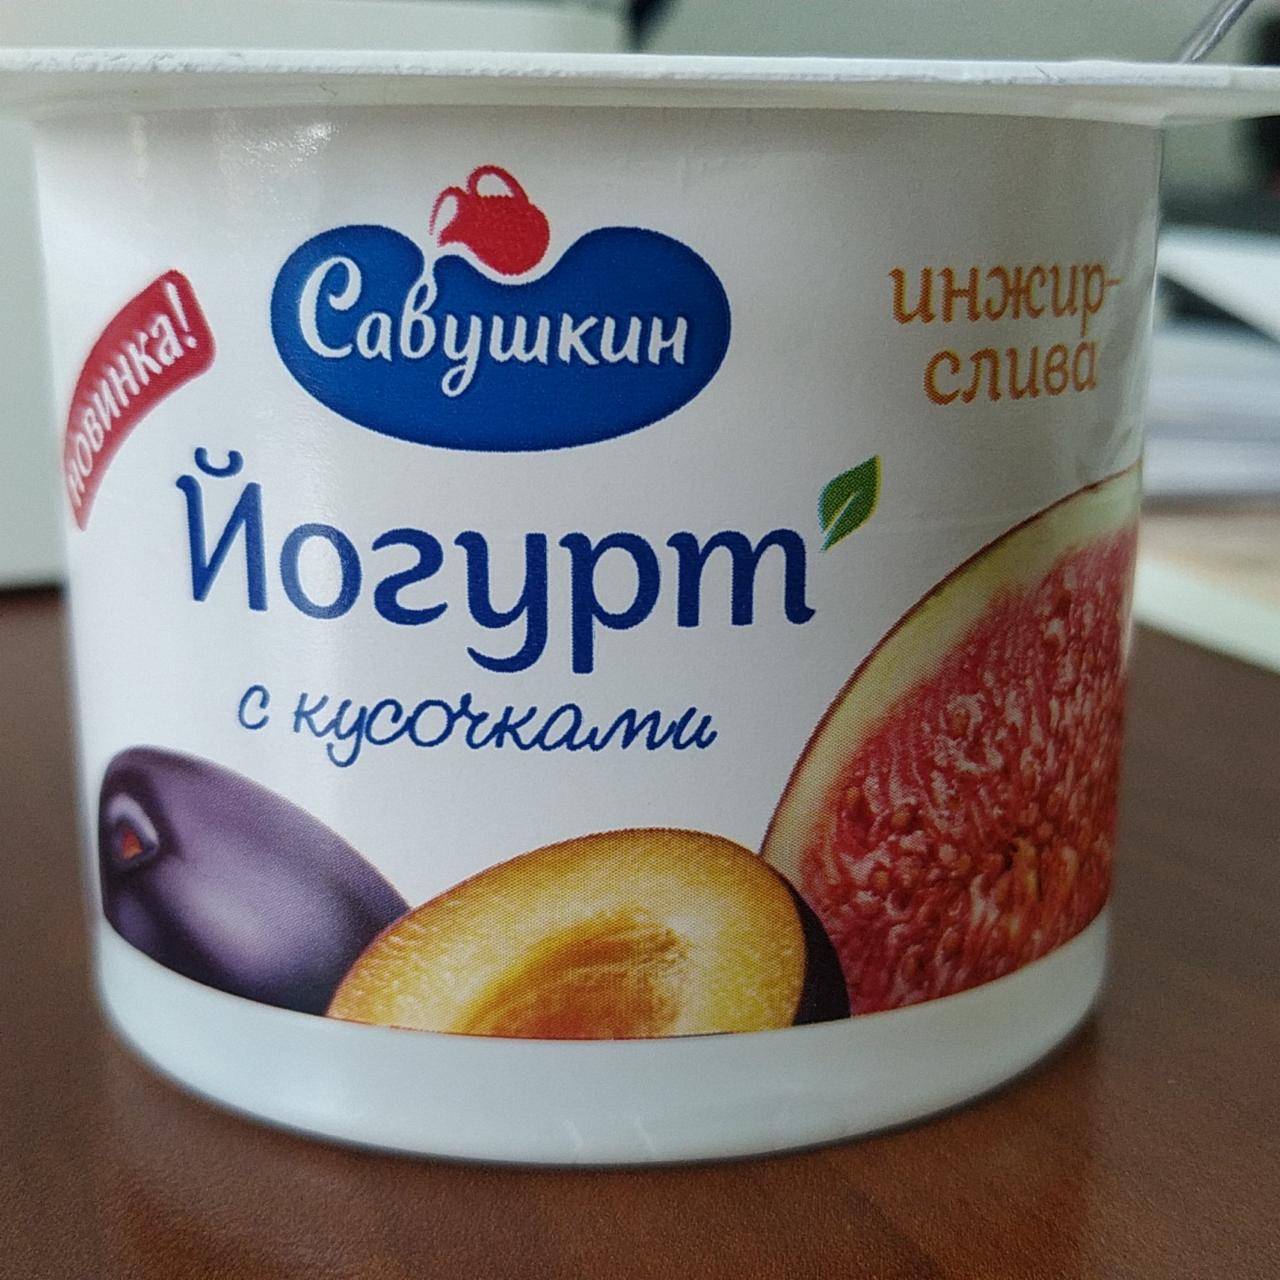 Фото - Йогурт с кусочками инжир-слива Савушкин продукт